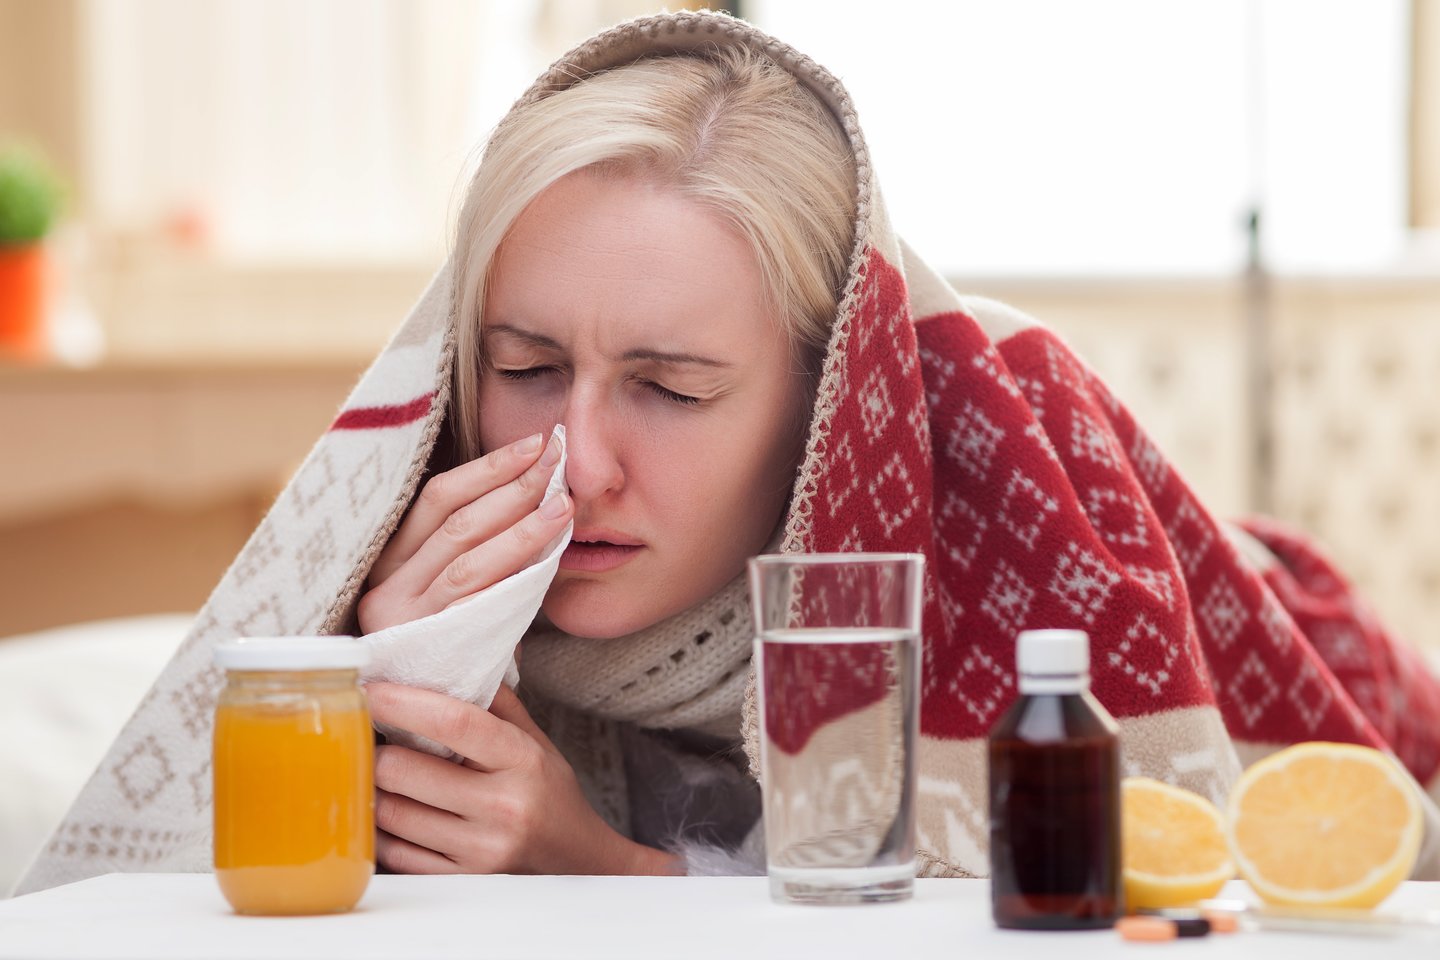 Specialistai teigia, kad socialinis atsiribojimas yra vienas iš efektyviausių būdų sustabdyti gripo plitimą.<br> 123rf nuotr.